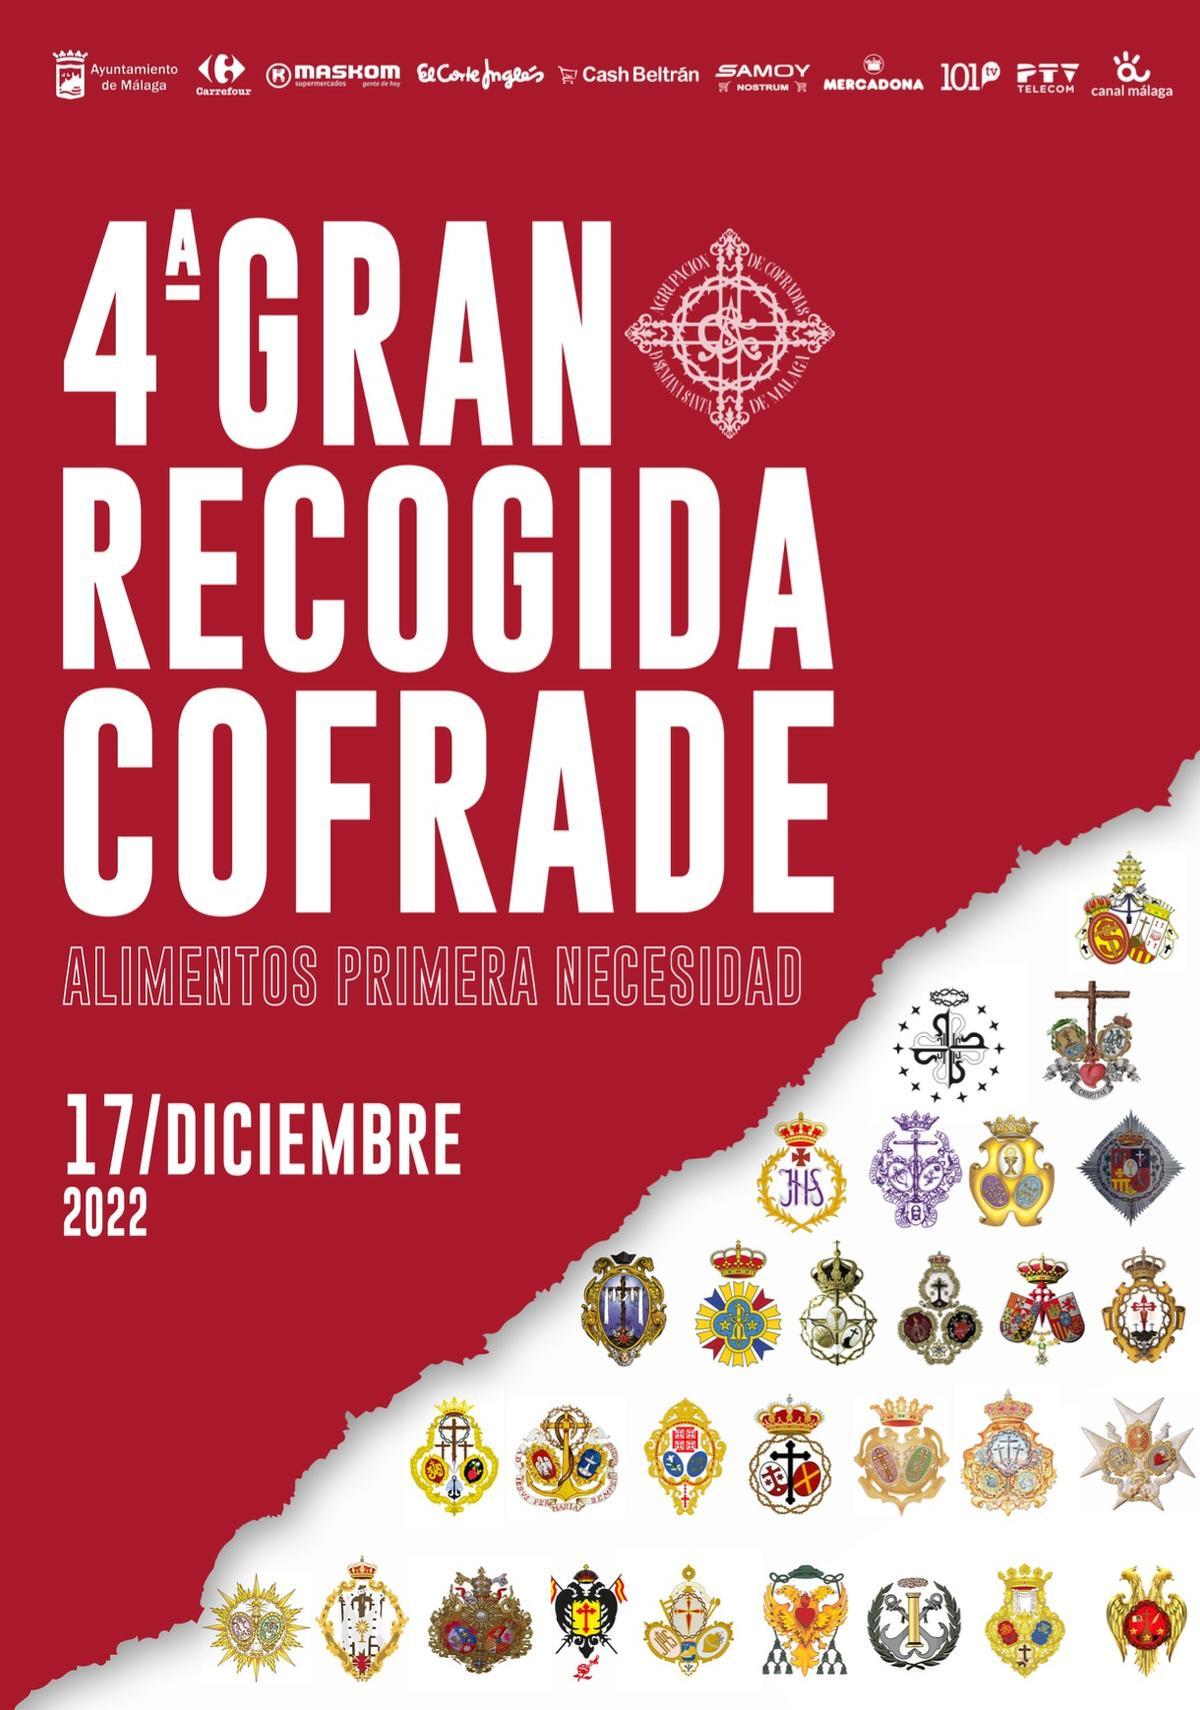 Cartel anunciador de la cuarta edición de la gran recogida cofrade, de este 17 de diciembre.